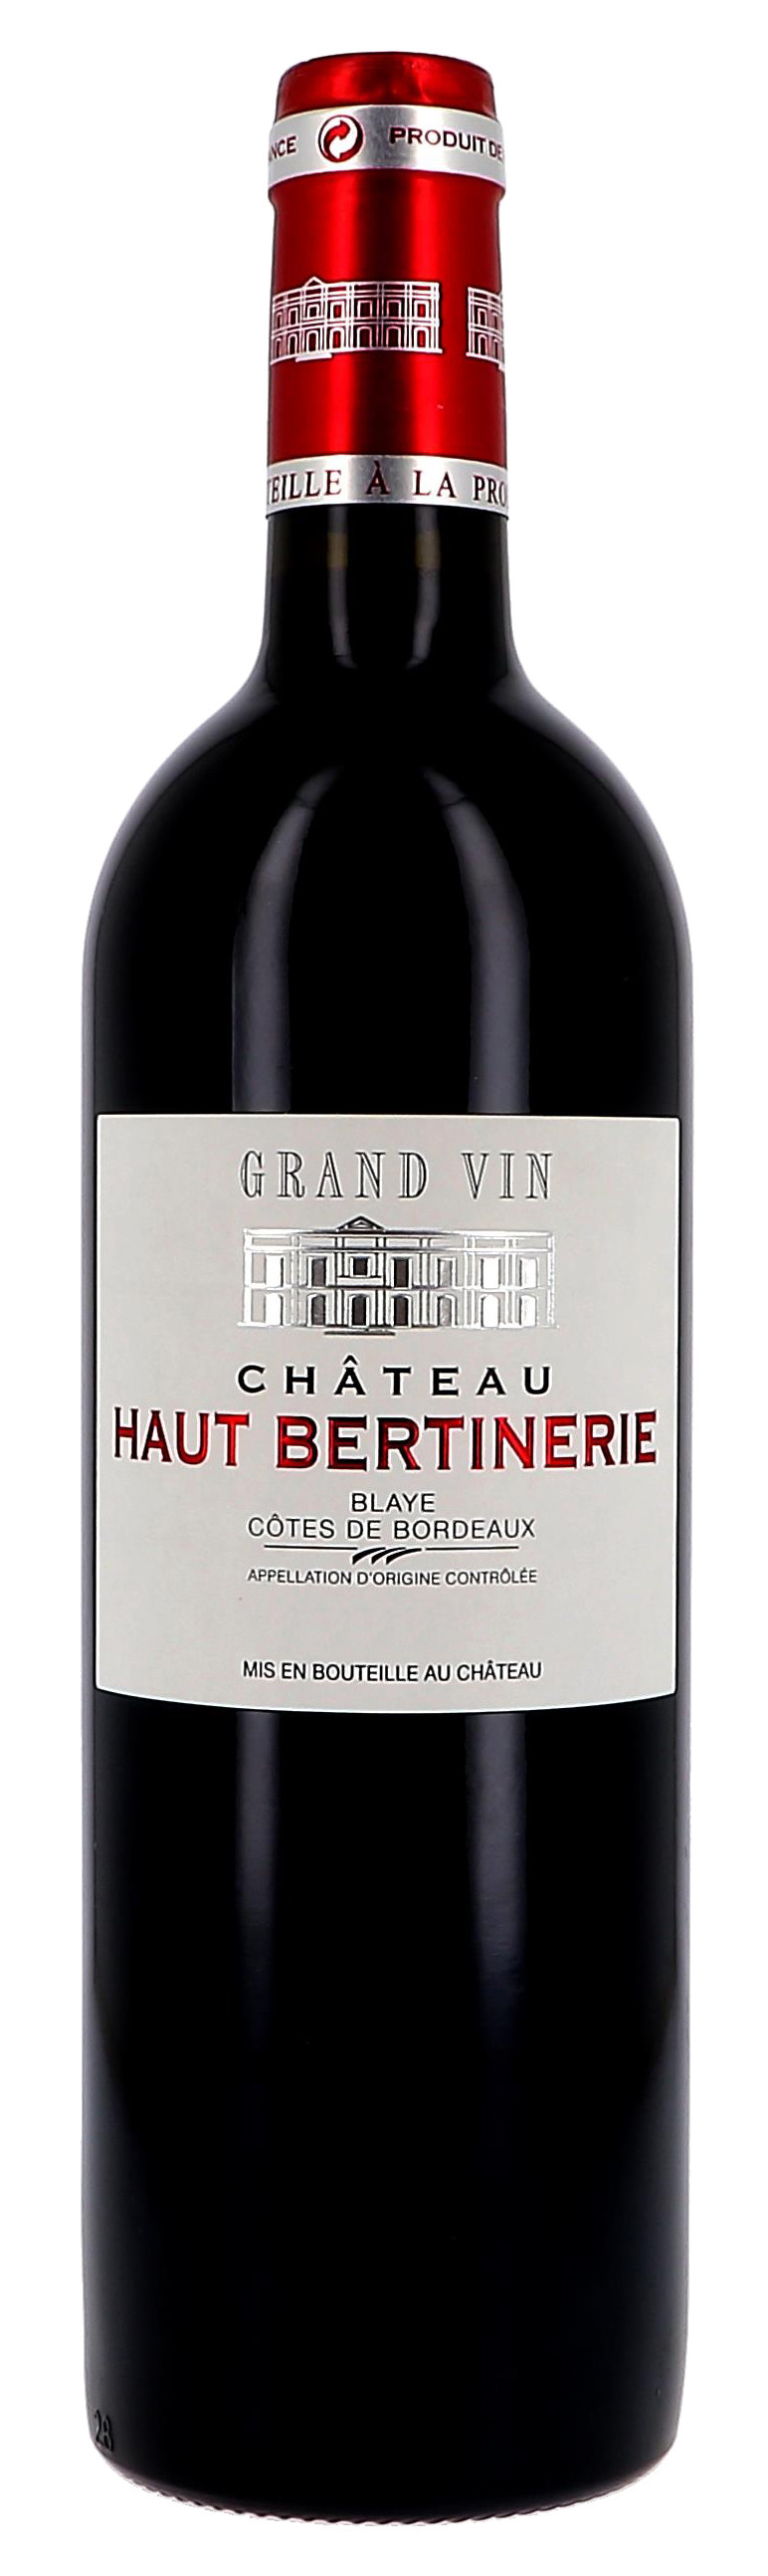 Chateau Haut-Bertinerie rouge 75cl 2014 Blaye Cotes de Bordeaux (Wijnen)